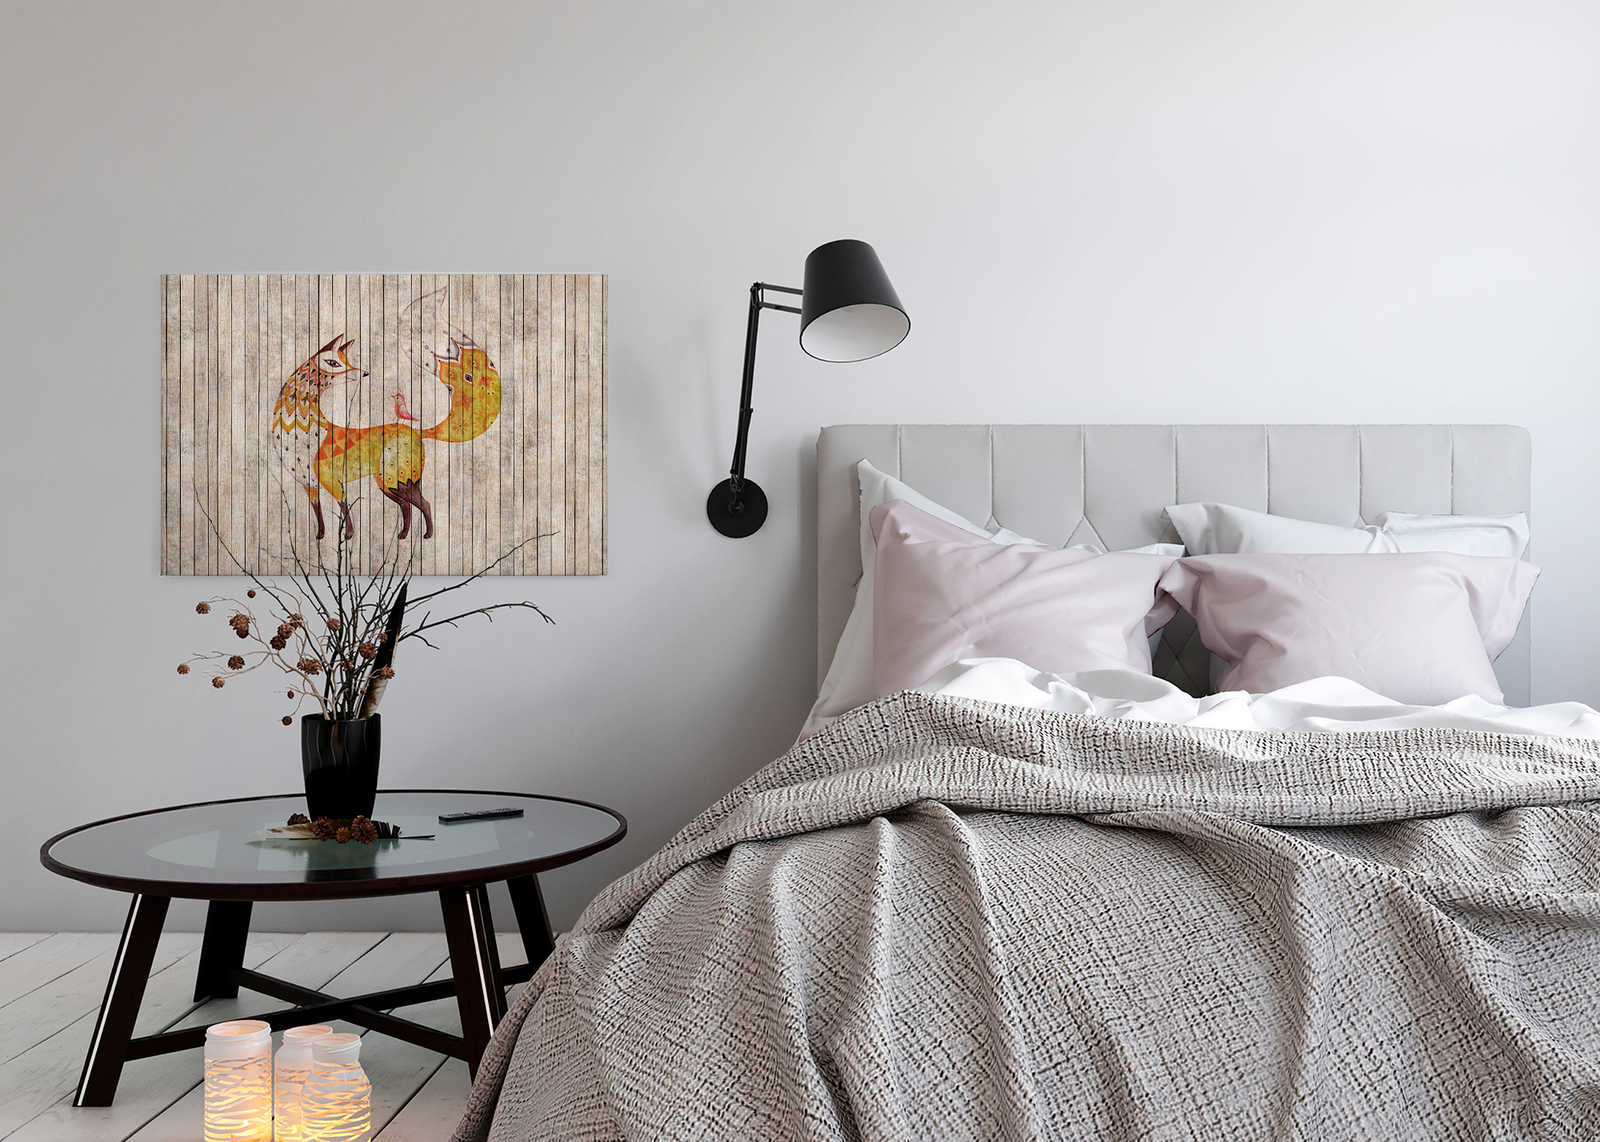             Fiaba 2 - Volpe e uccello su tela effetto legno - 0,90 m x 0,60 m
        